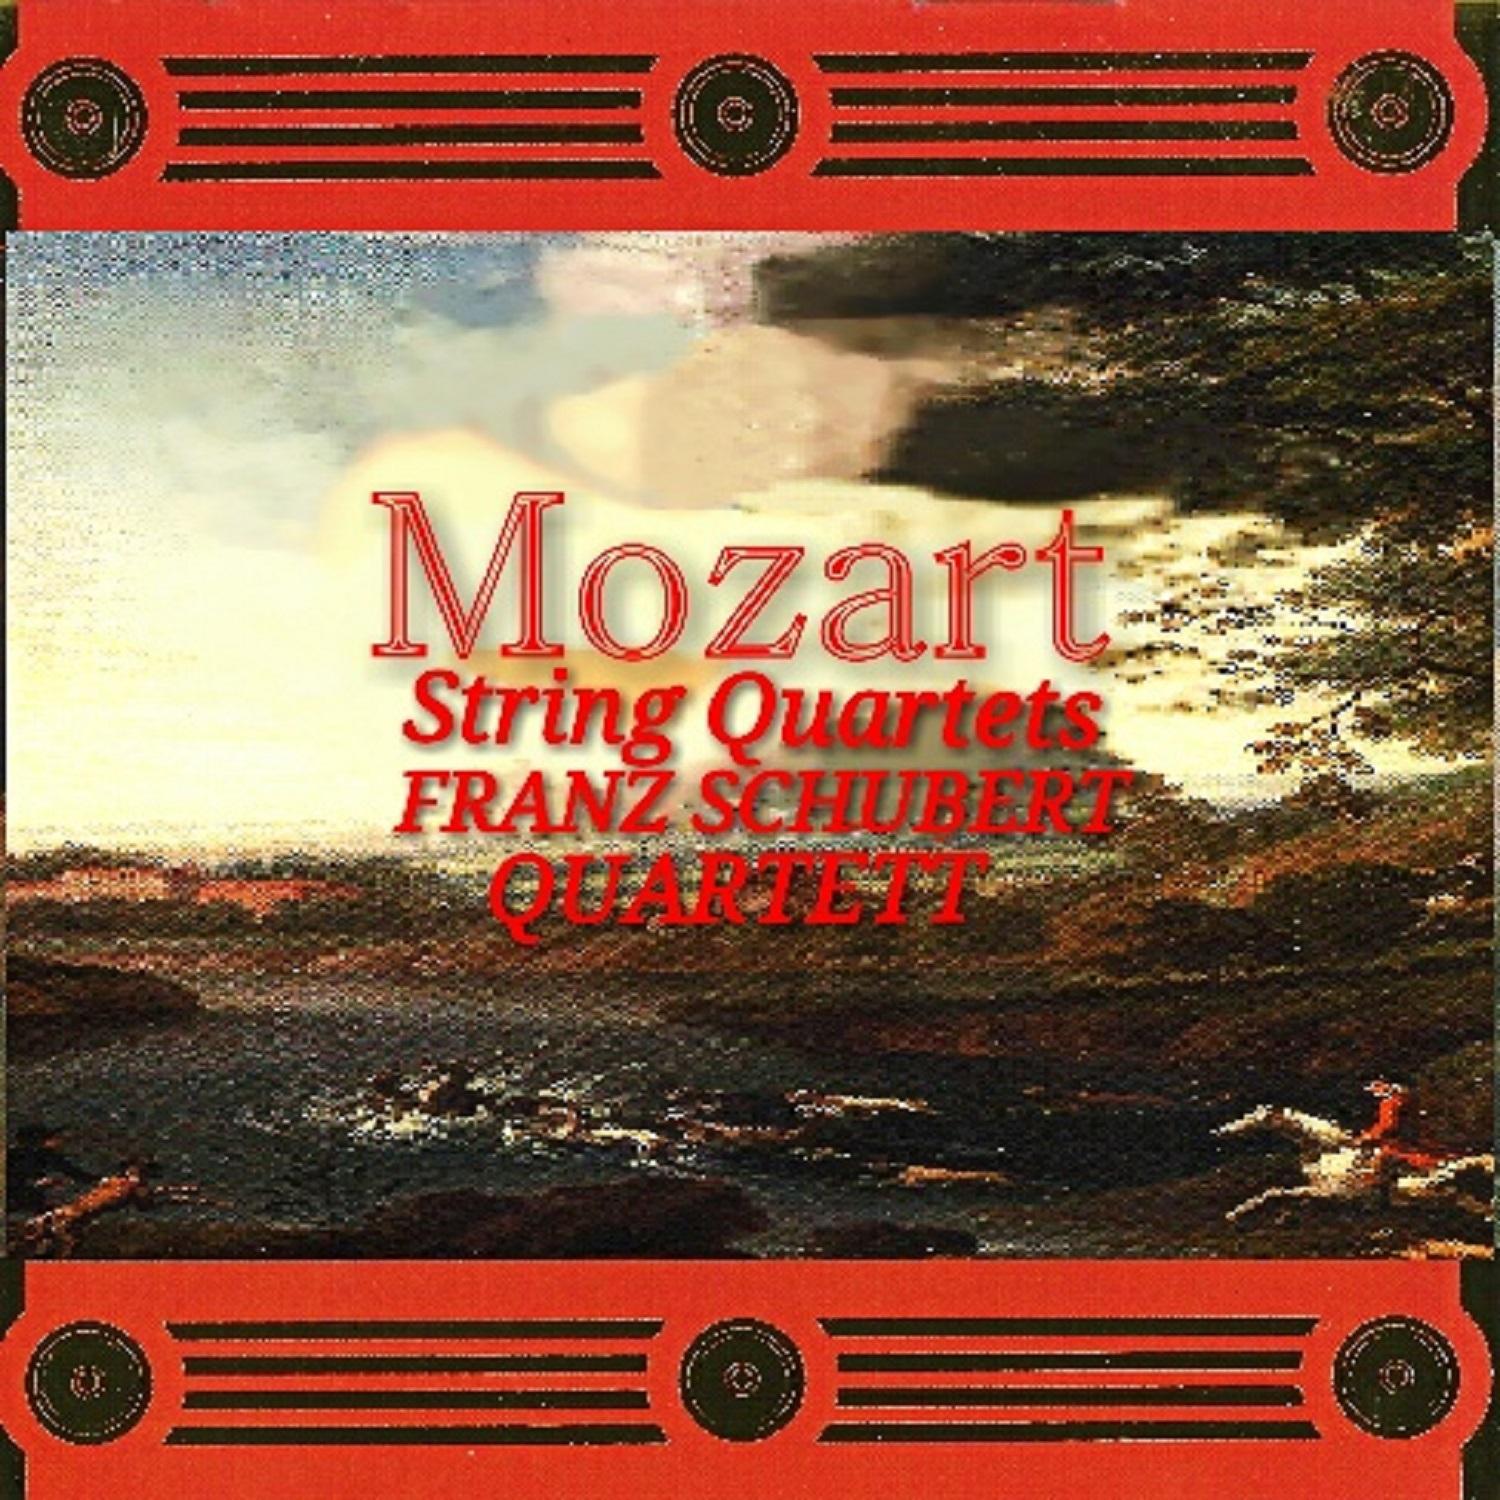 Mozart - String Quartets, Franz Schubert Quartett